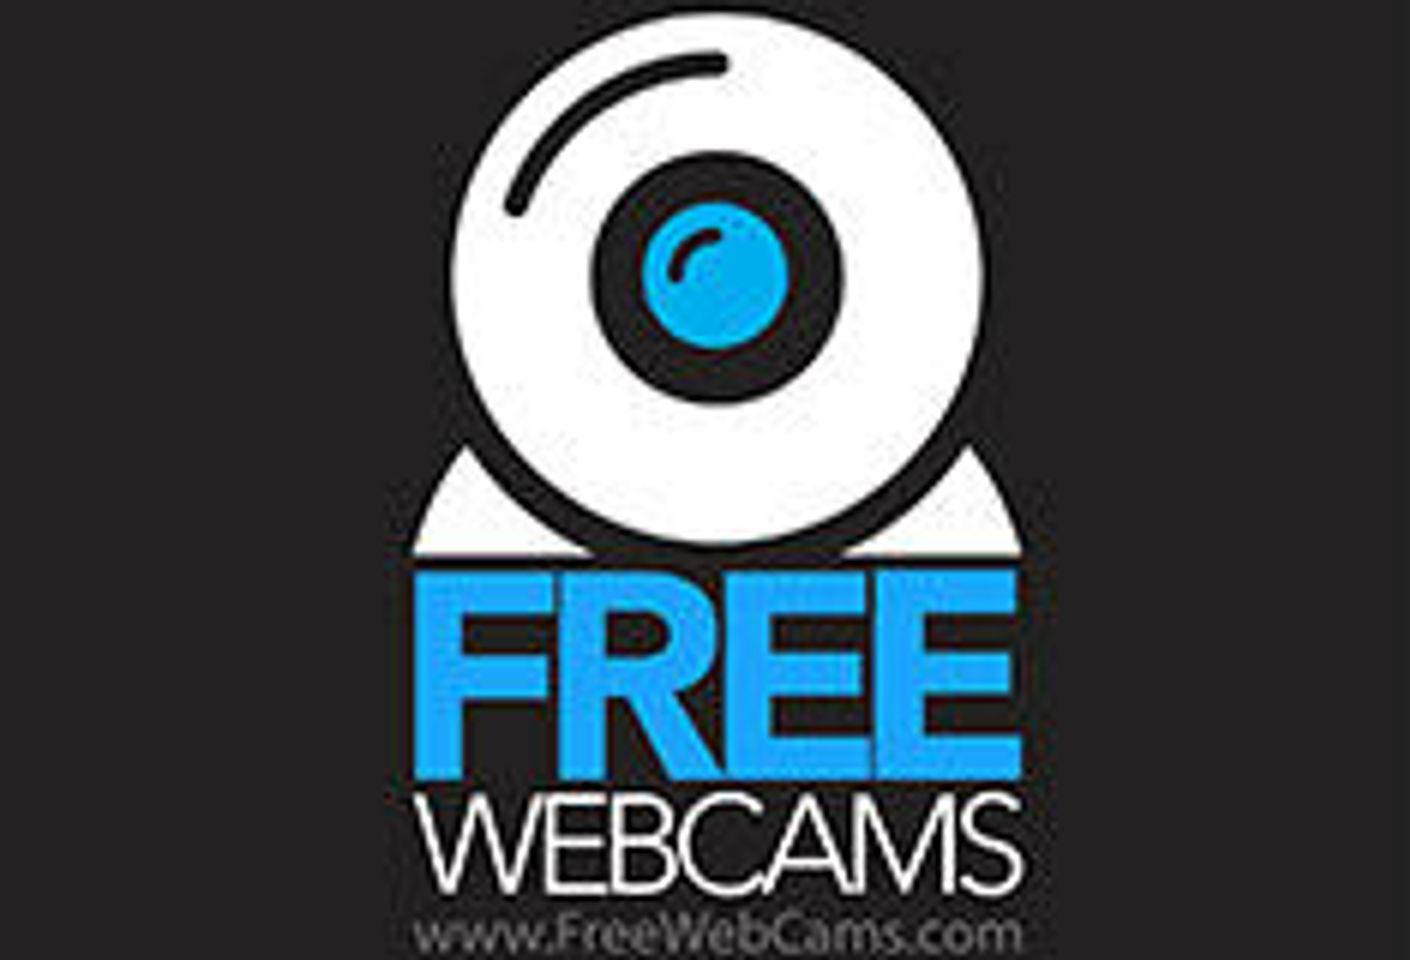 FreeWebCams.com Extends October Promo Through November